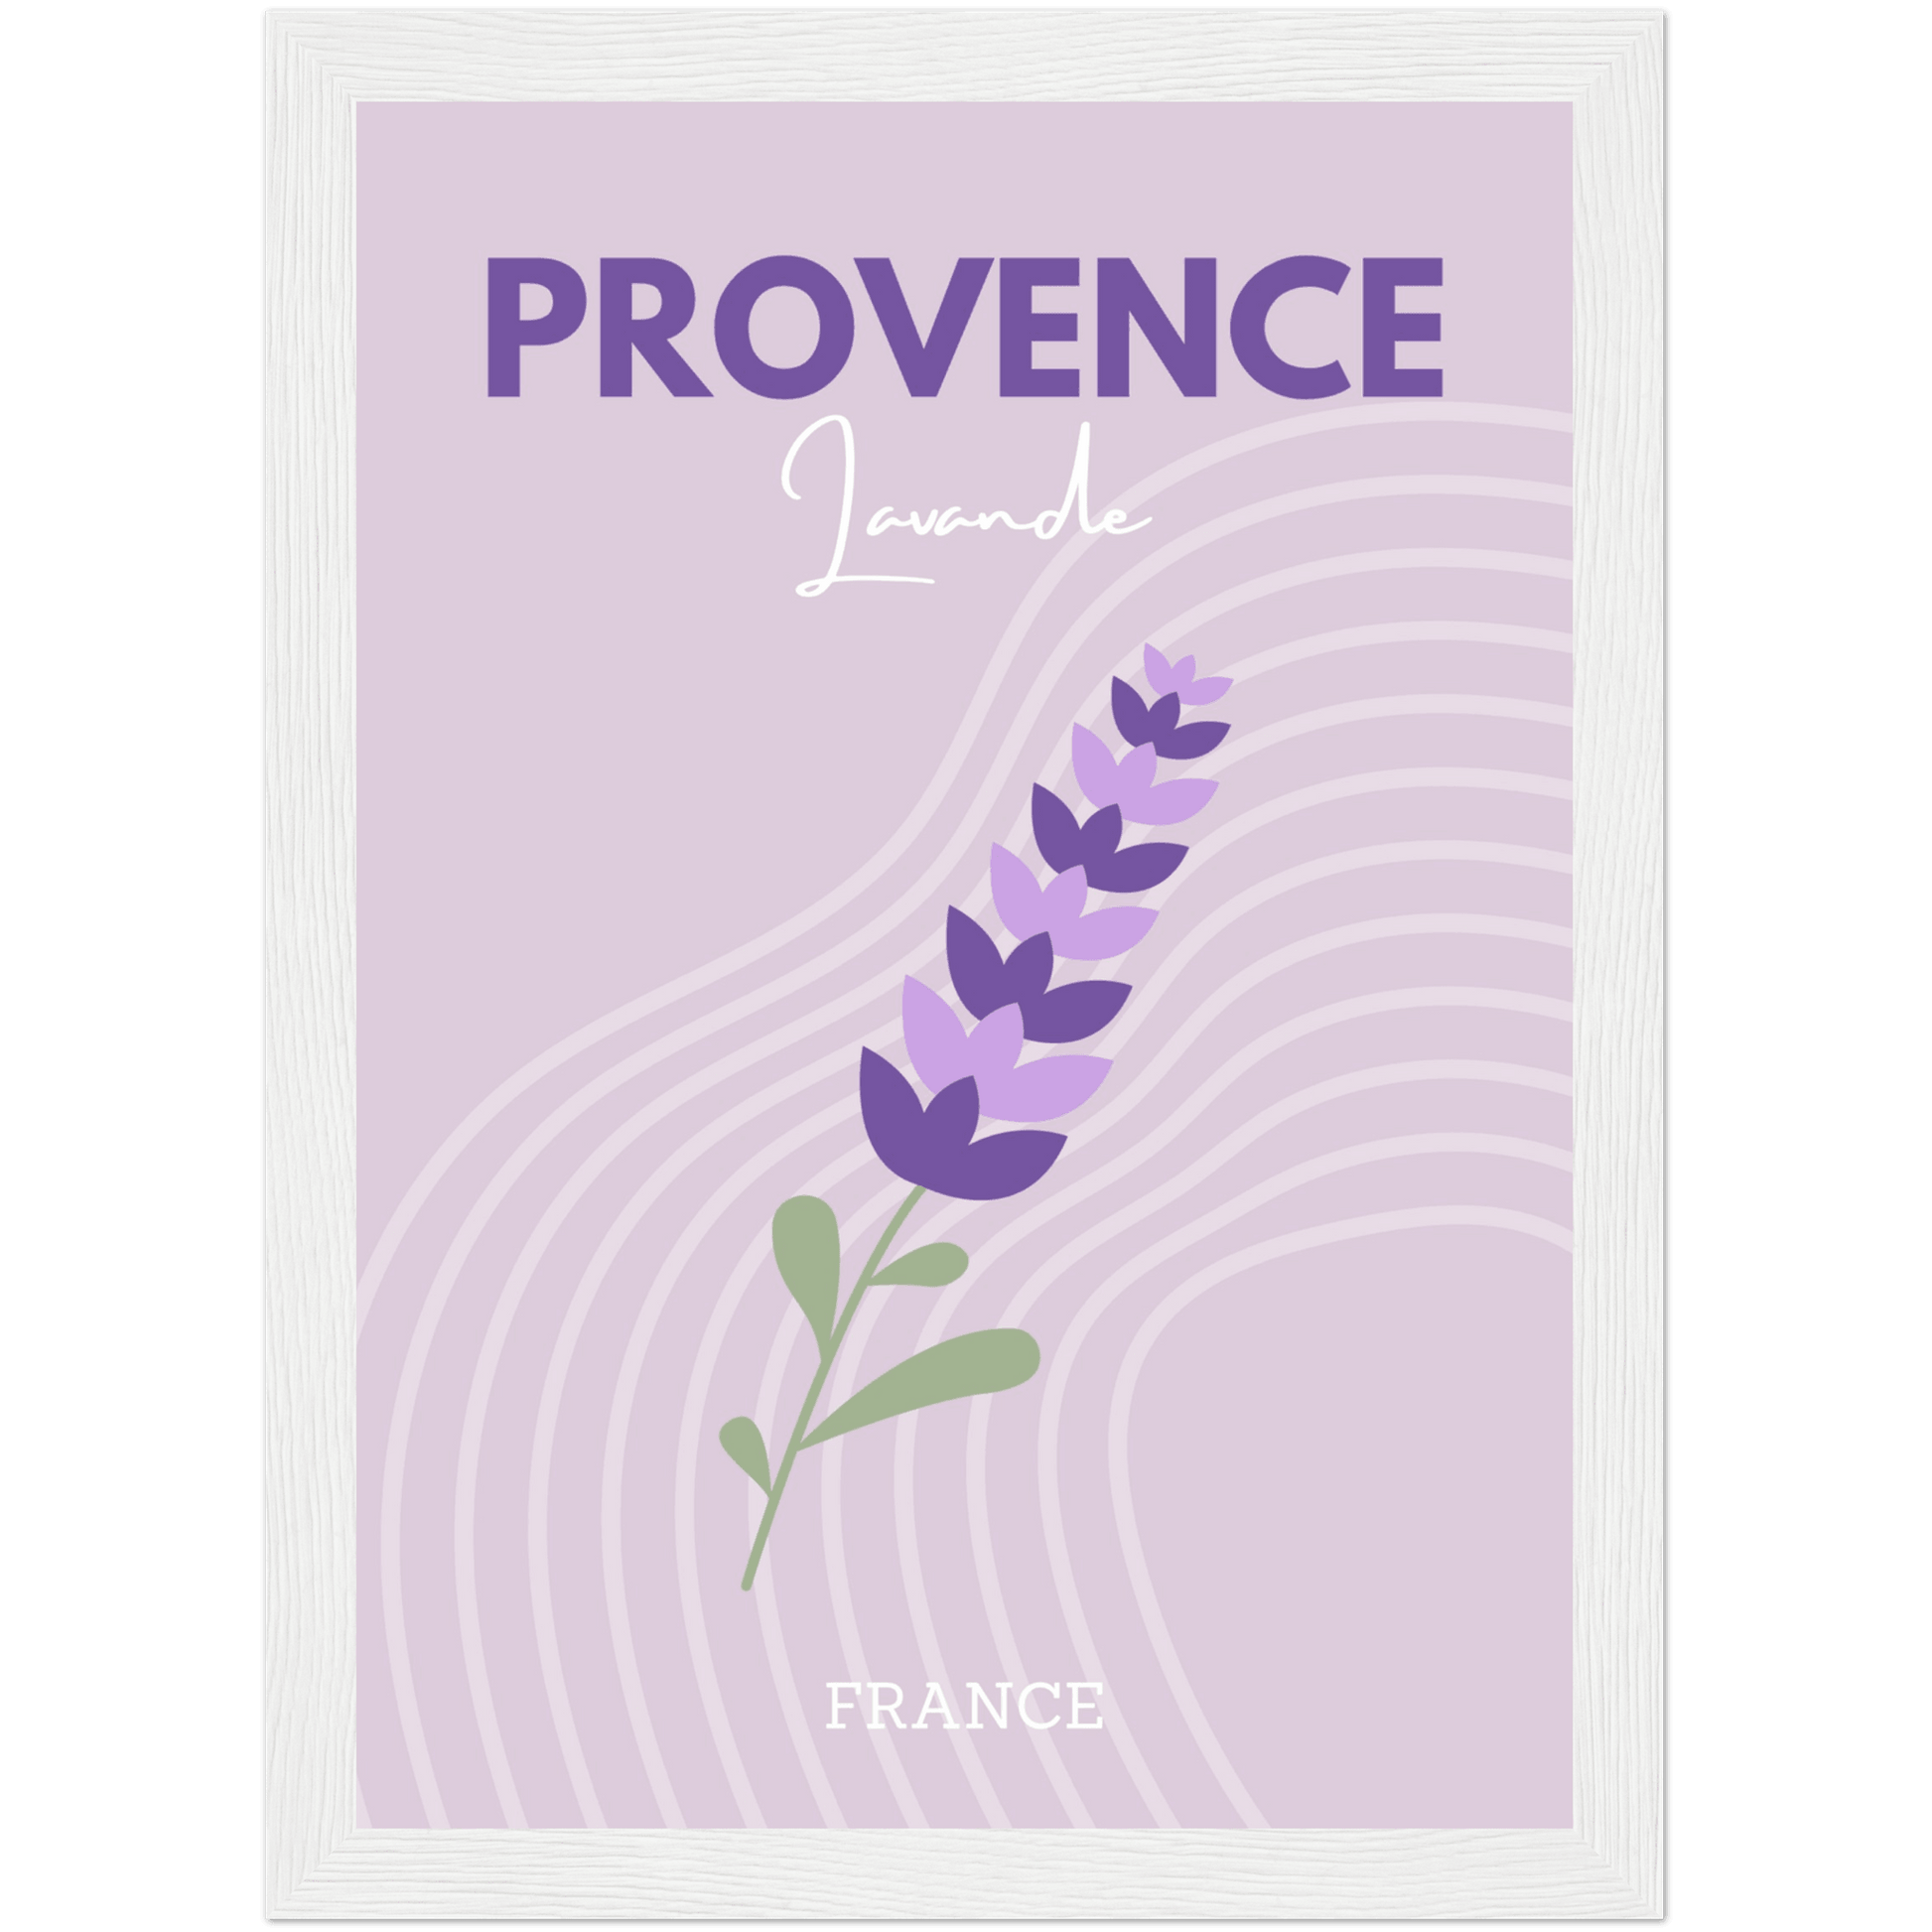 Provence - A4, A3, A2 Posters Base - Poster Print Shop / Art Prints / PostersBase